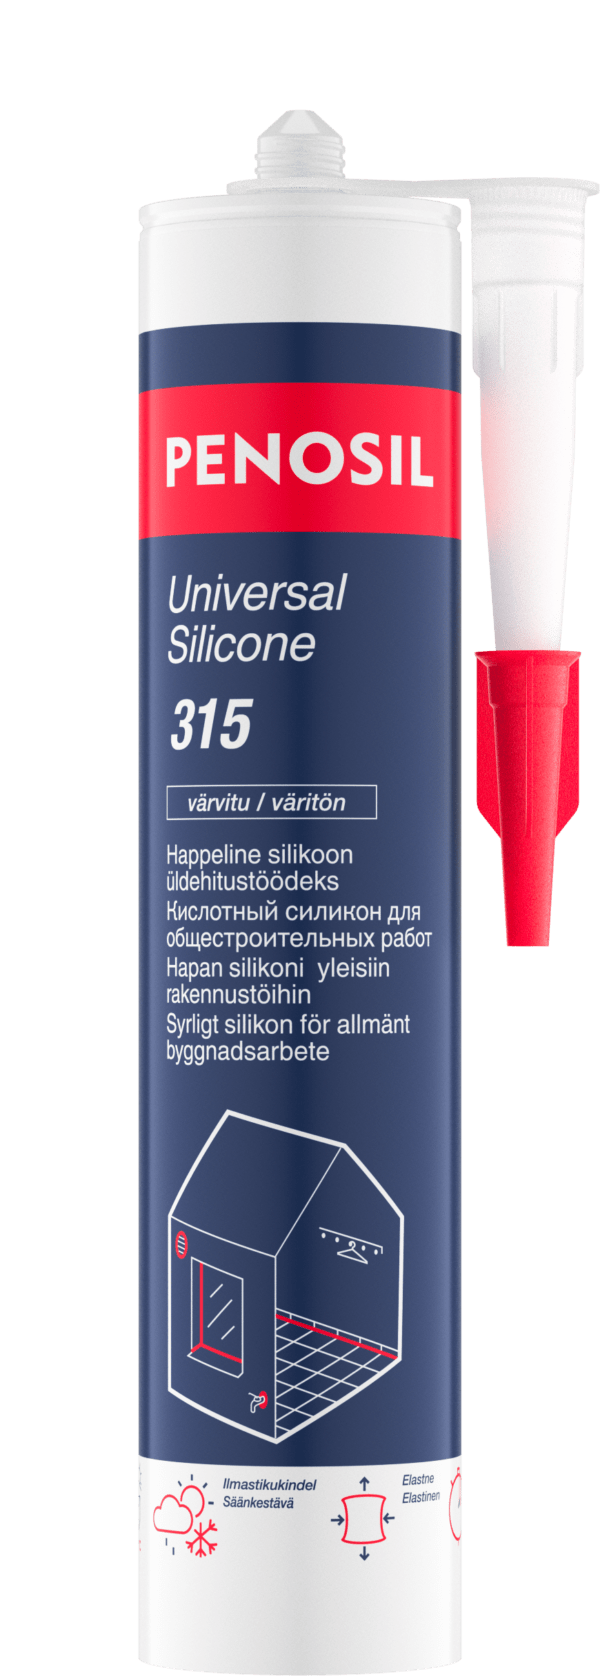 Penosil_Universal_silicone_315_EE_FI